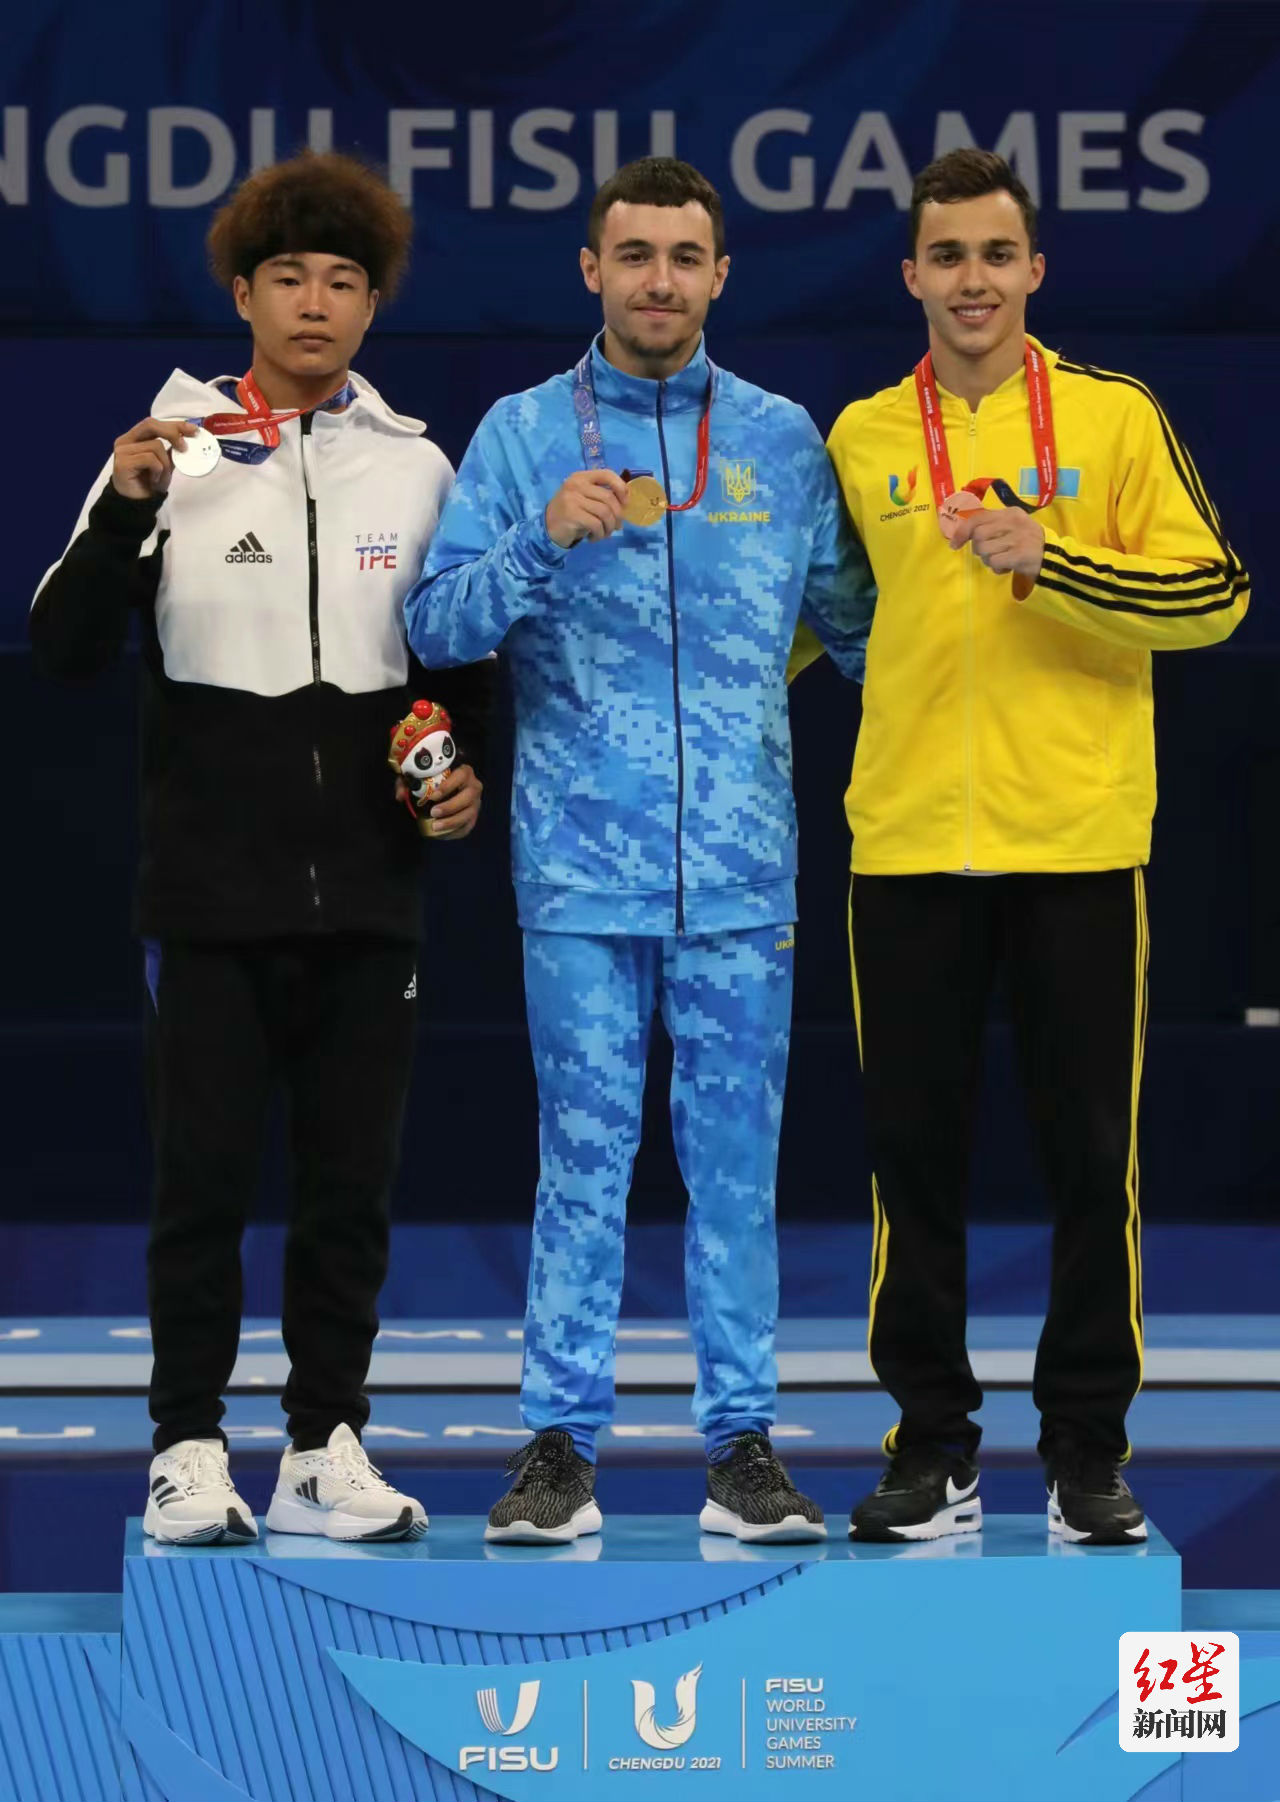 ▲大运会体操男子跳马决赛，最终乌克兰选手获得冠军。摄影：邹森